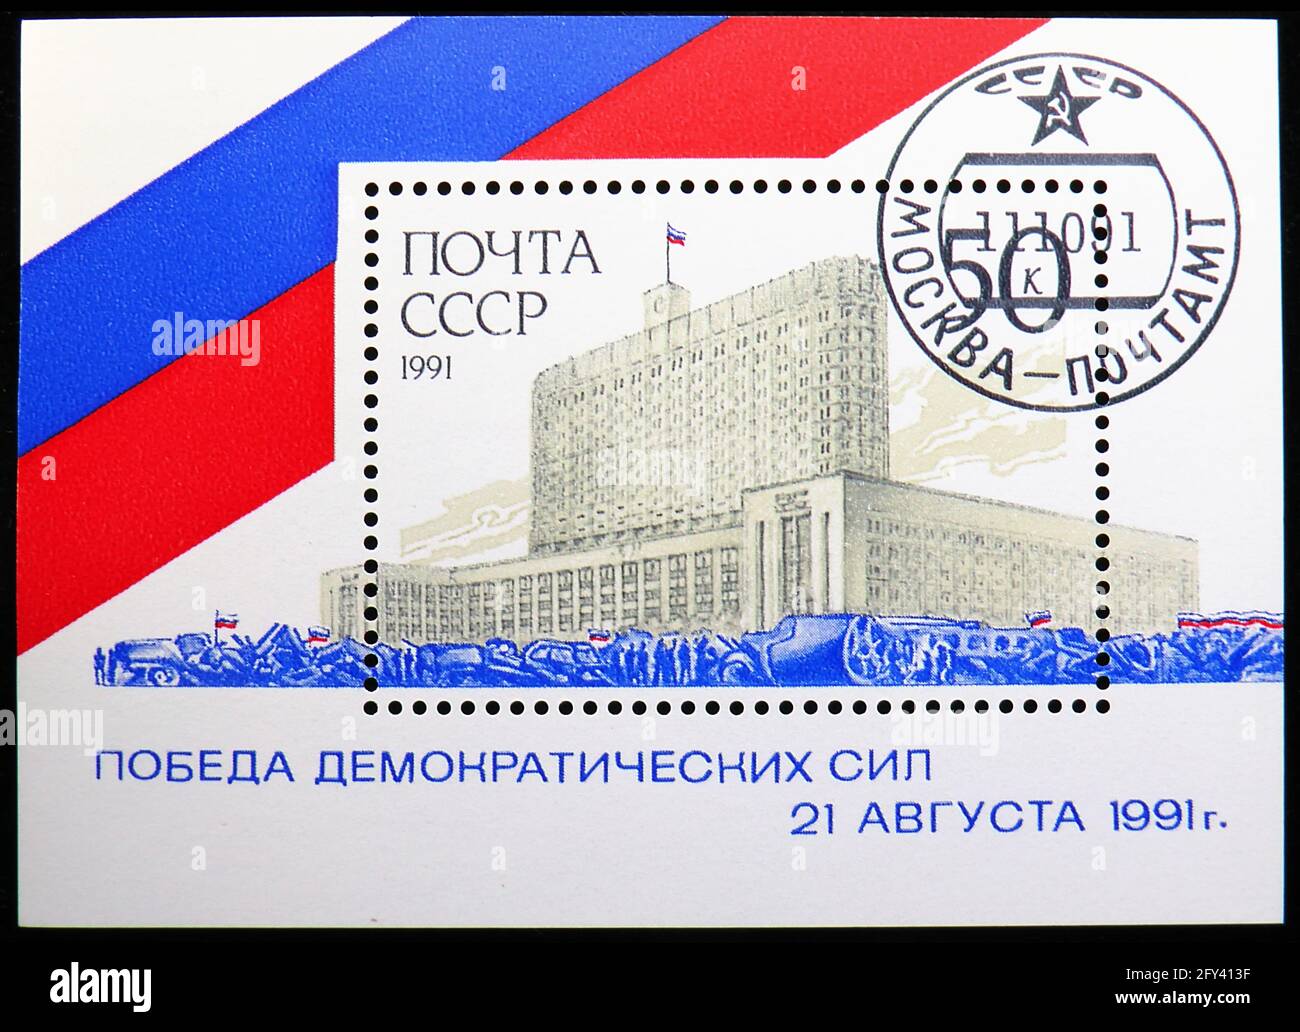 MOSCÚ, RUSIA - 31 DE AGOSTO de 2019: Sello postal impreso en la Unión Soviética (Rusia) muestra Bloque: Derrota de intento de golpe, serie, alrededor de 1991 Foto de stock